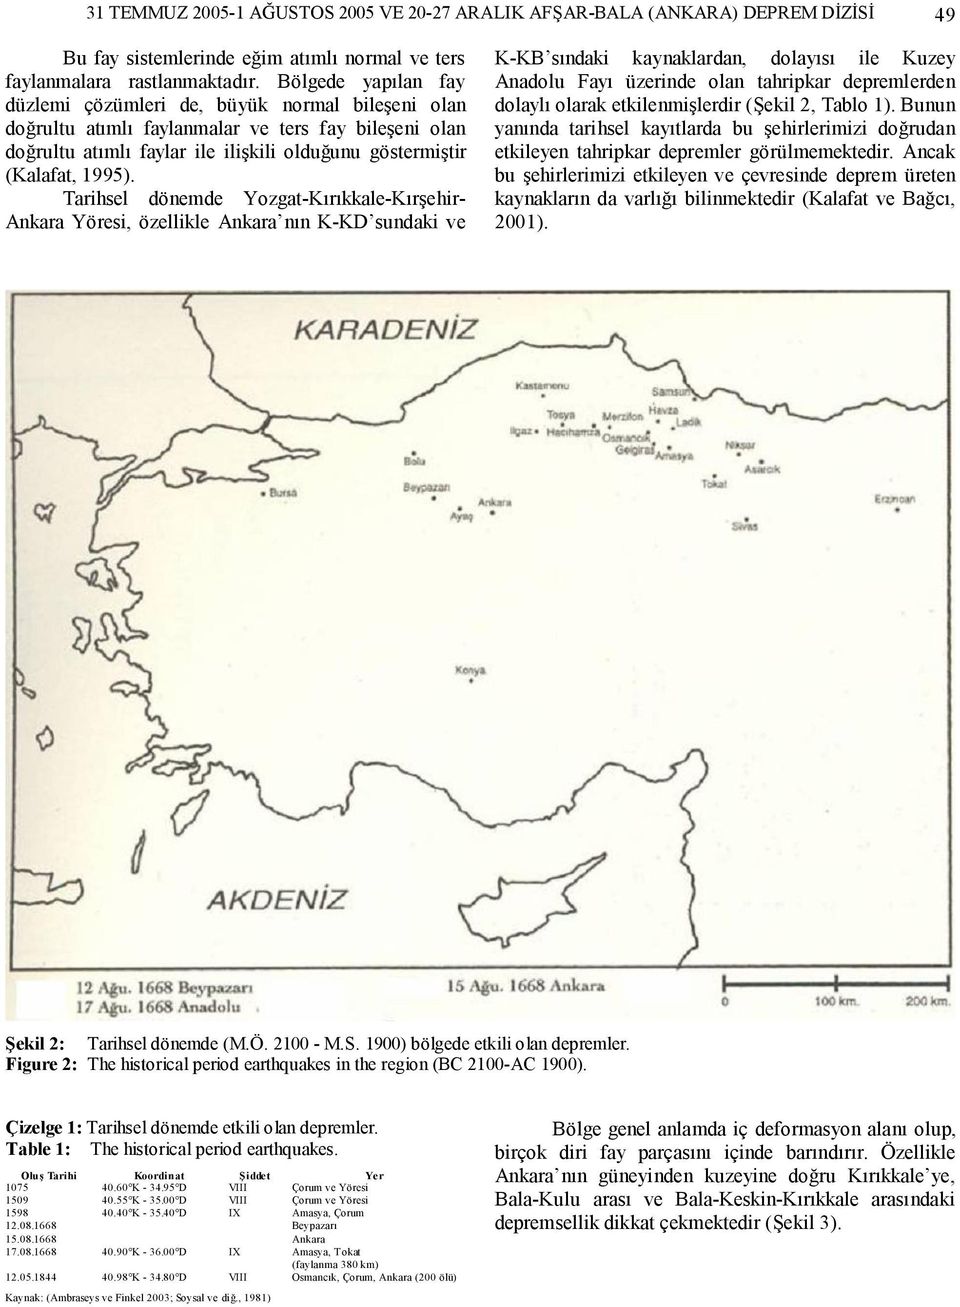 Tarihsel dönemde Yozgat-Kırıkkale-Kırşehir- Ankara Yöresi, özellikle Ankara nın K-KD sundaki ve K-KB sındaki kaynaklardan, dolayısı ile Kuzey Anadolu Fayı üzerinde olan tahripkar depremlerden dolaylı